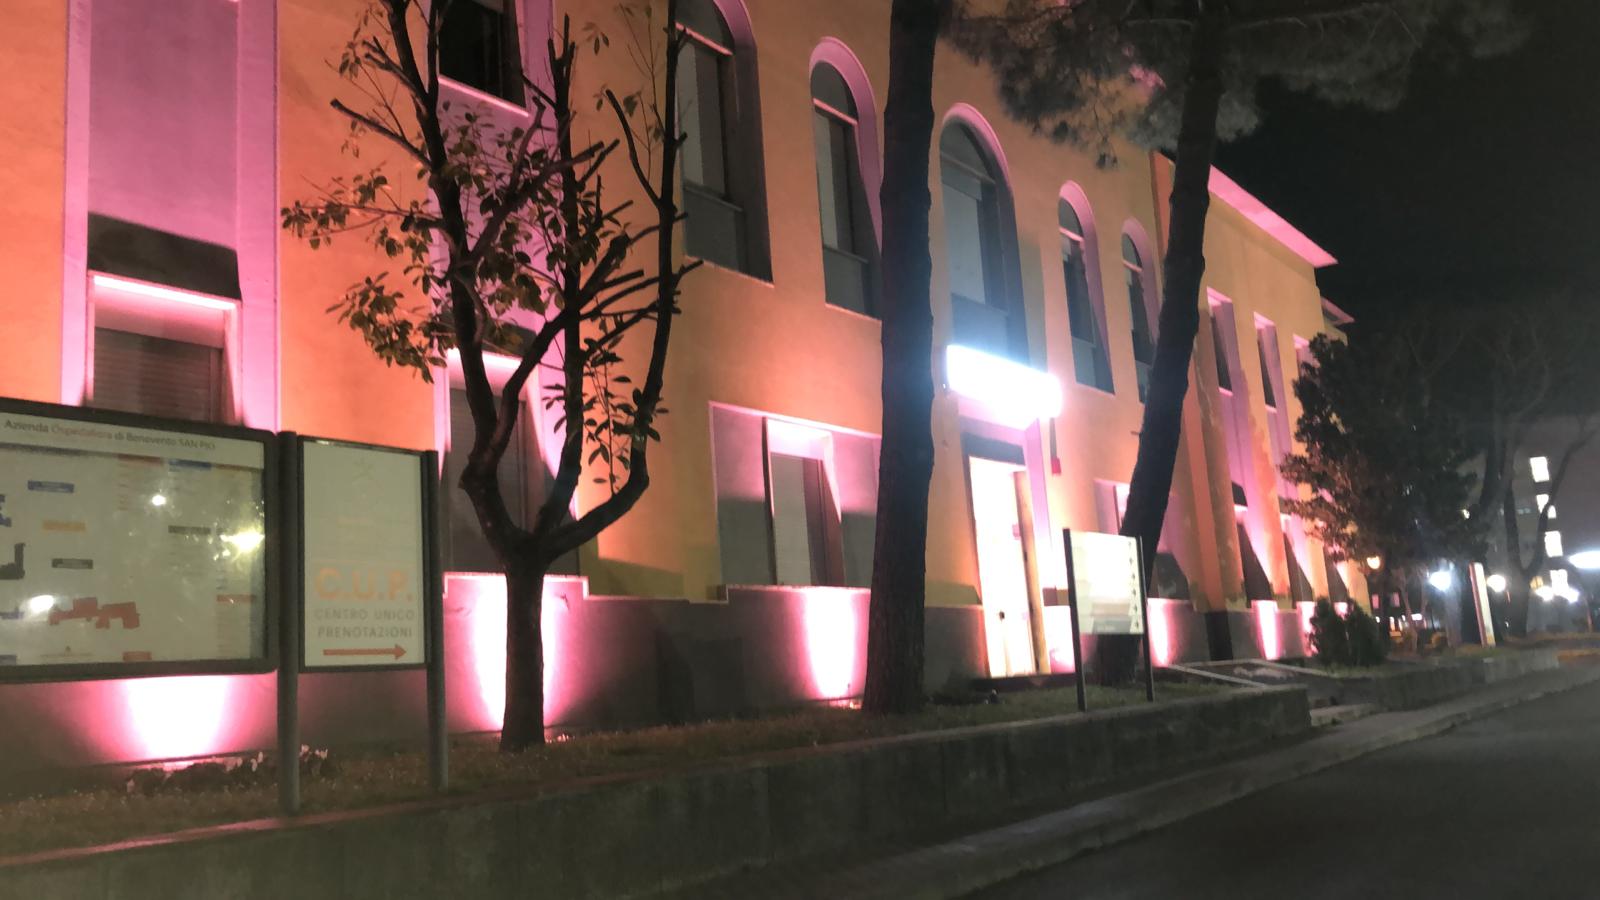 Benevento| L’ospedale “San Pio” si illumina di rosa per l’8 marzo